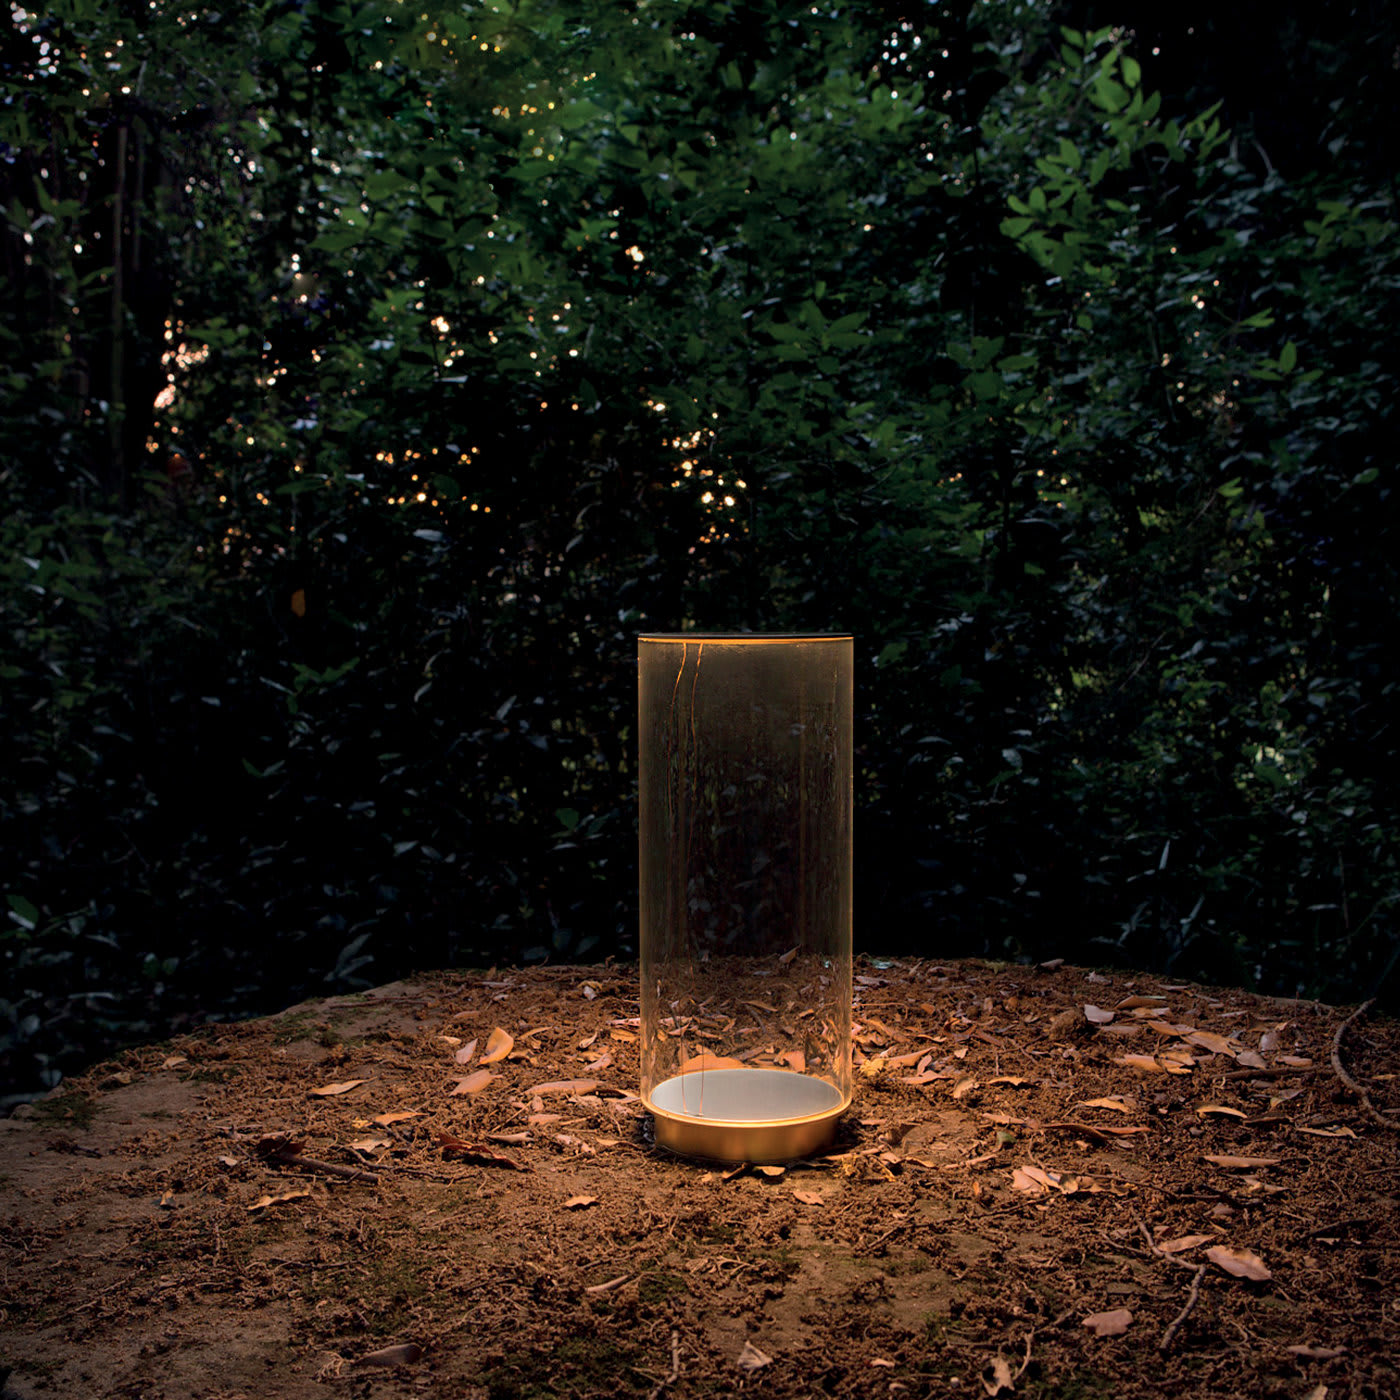 Fatua Table Lamp by Emanuel Gargano - Emanuel Gargano